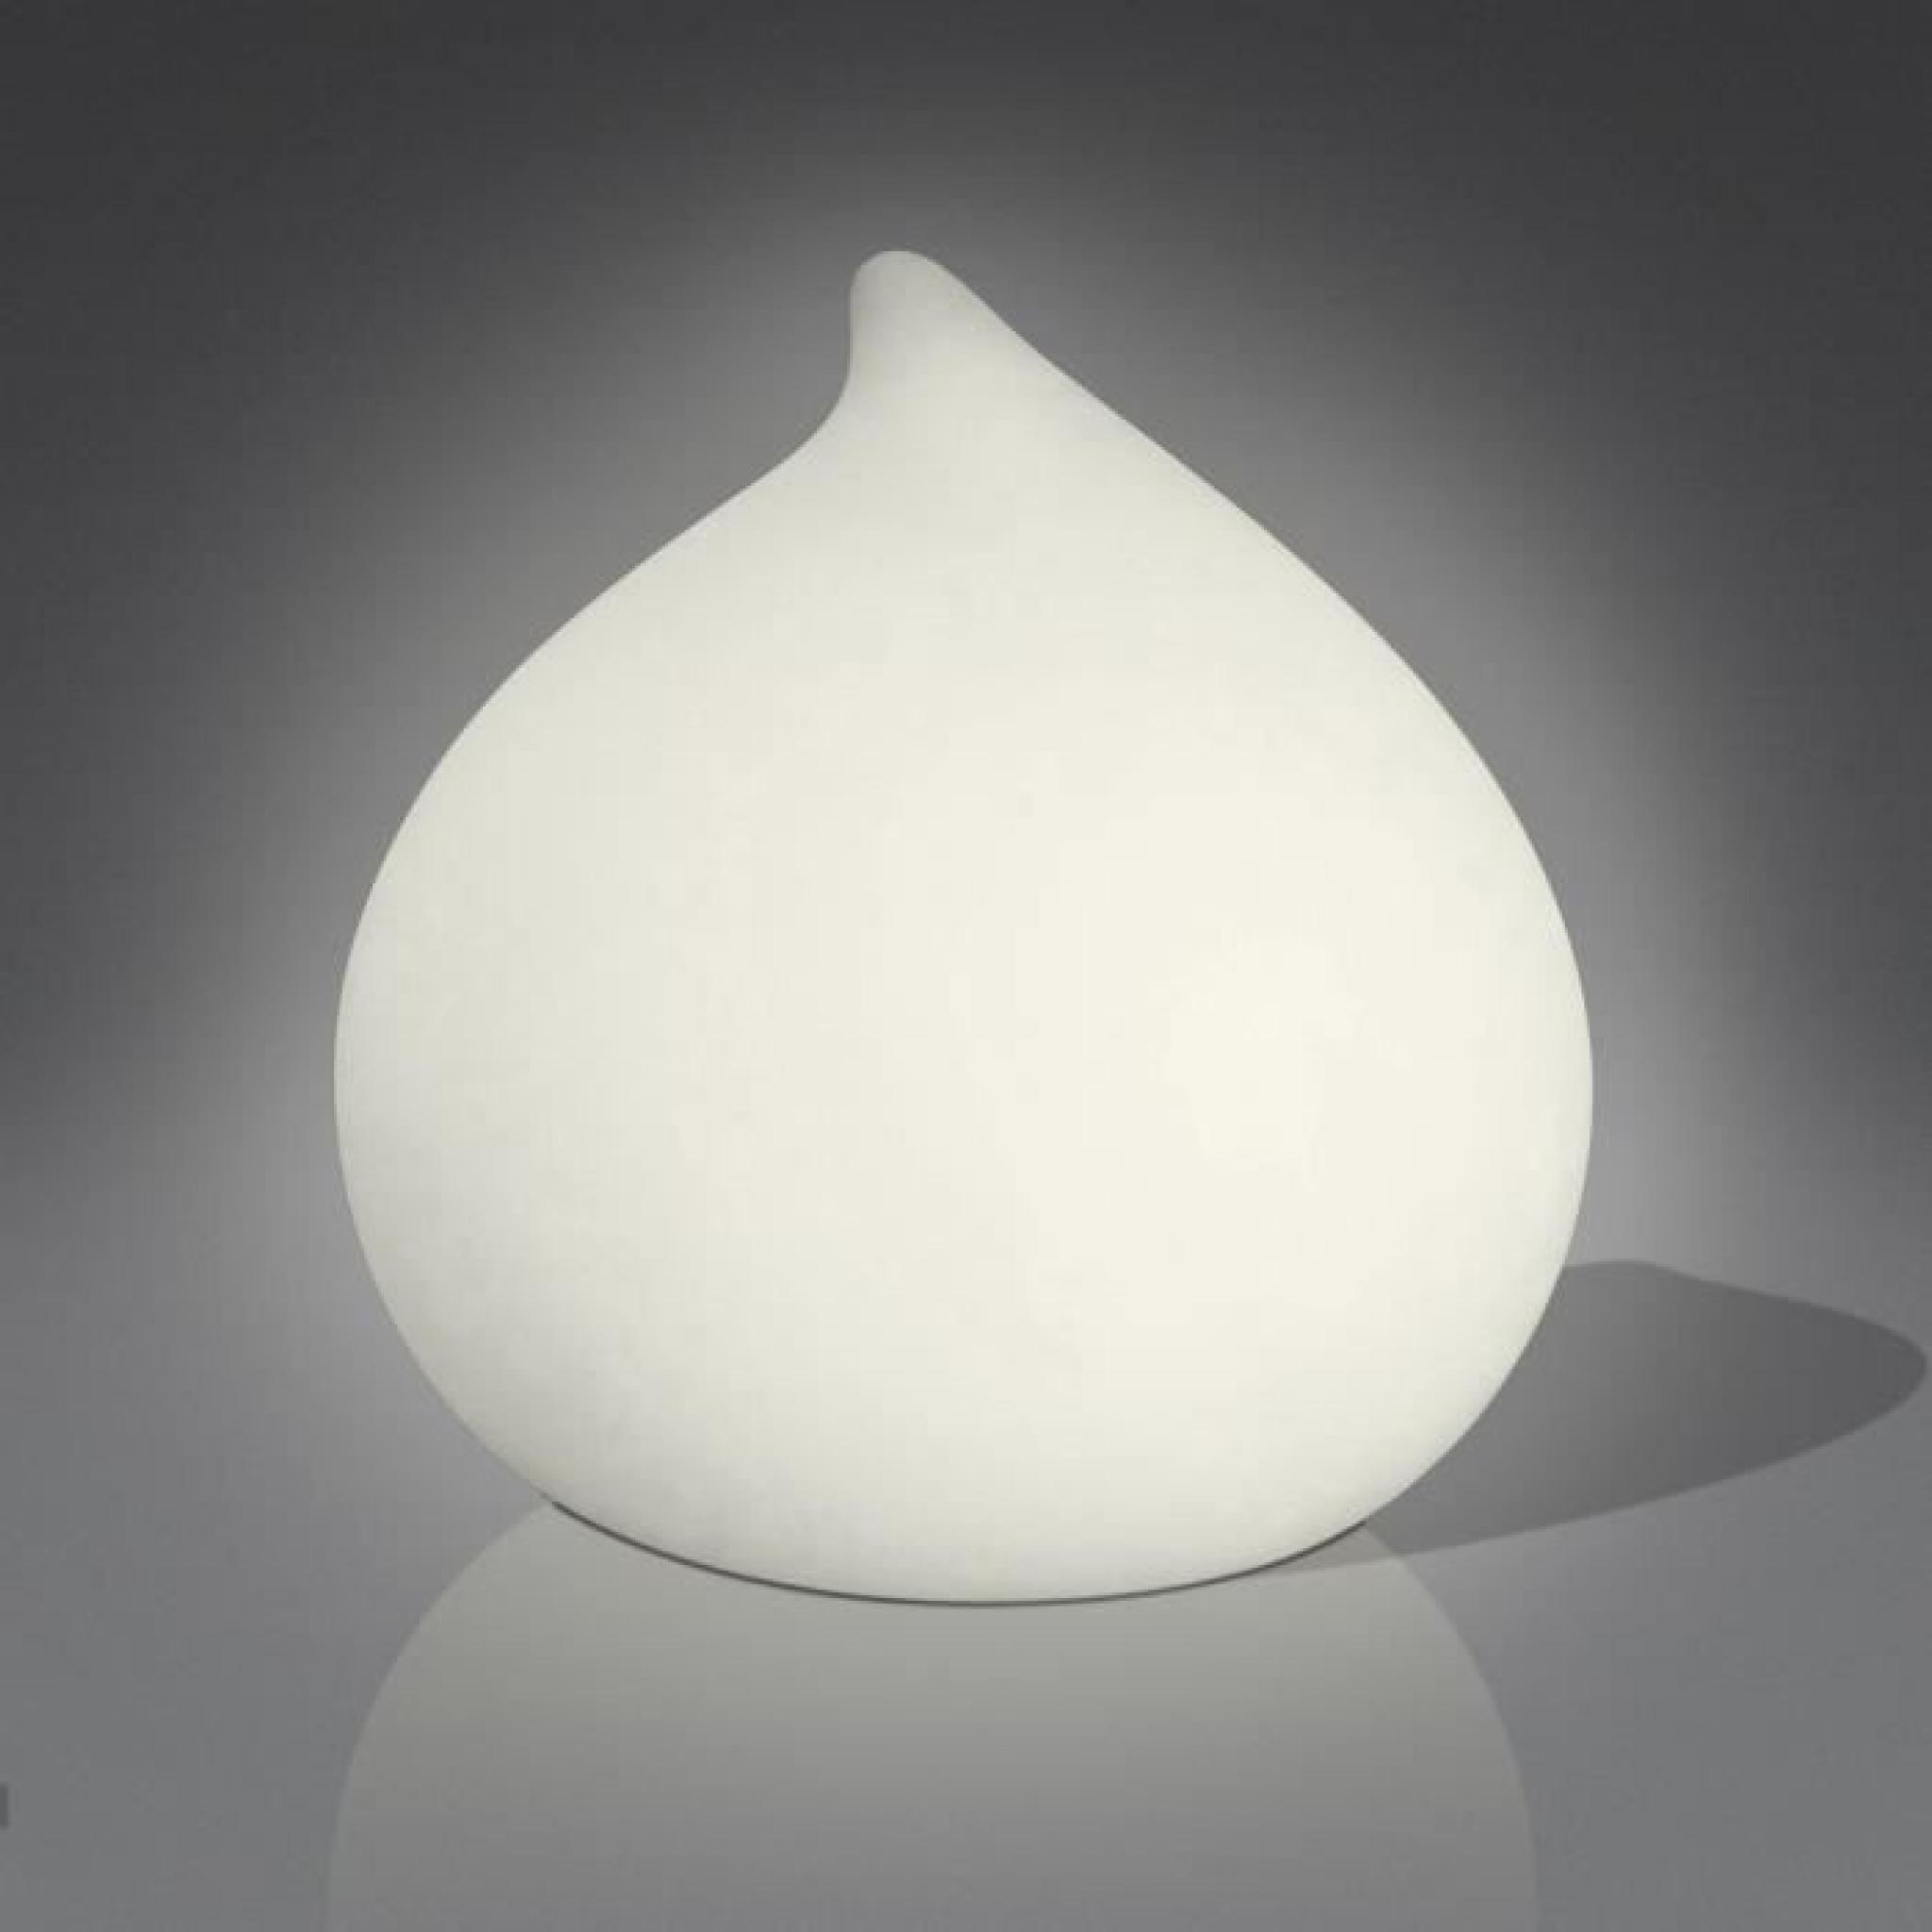 Goutte Lampe d'interieur avec la forme de goutte avec coque en polyethylene et connexion traditionnelle pour alimentation de rese...